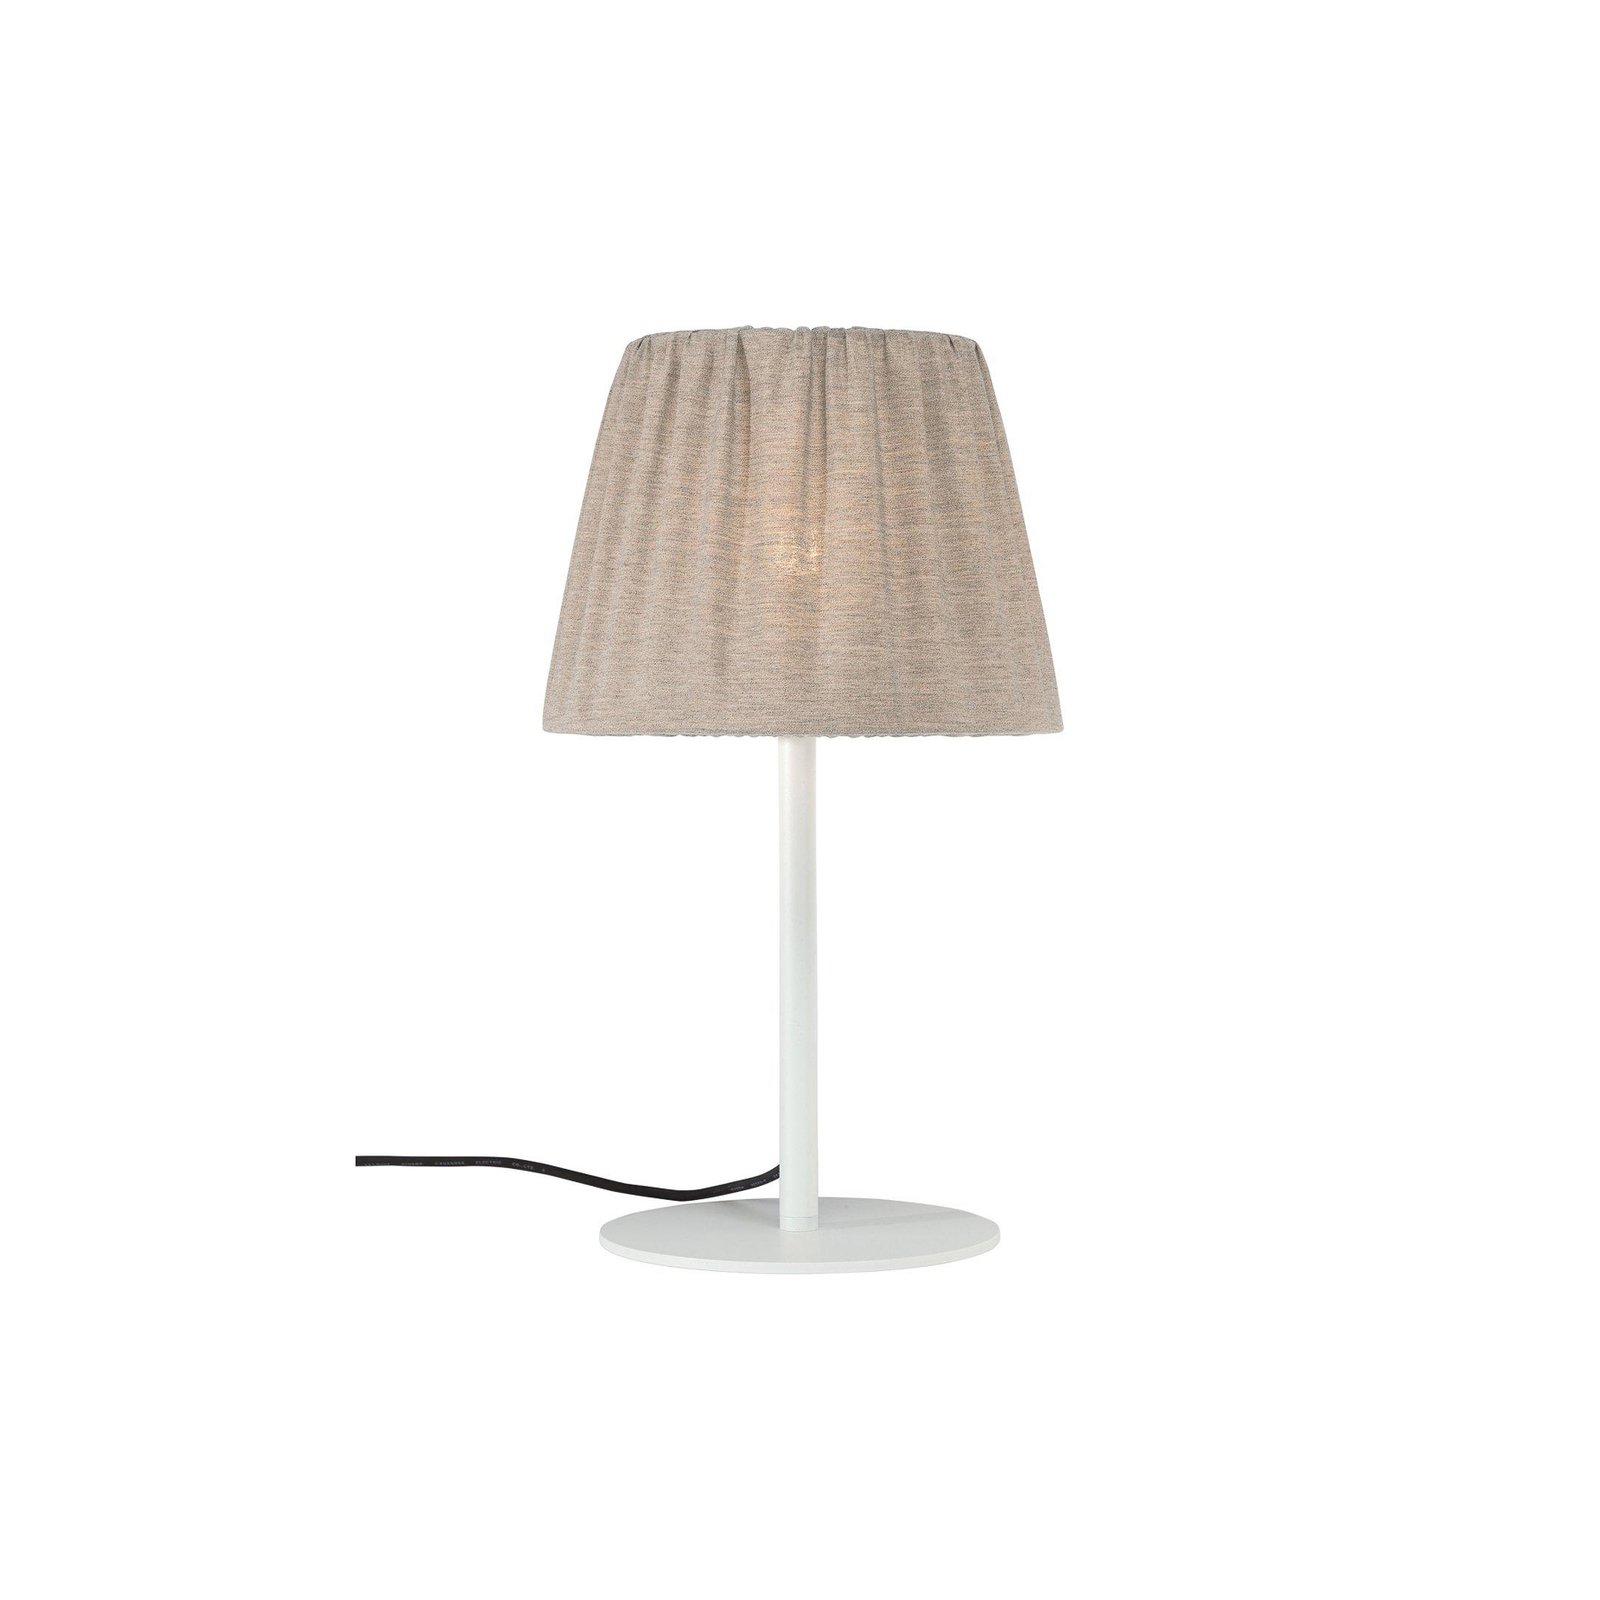 PR Home lampada da tavolo per esterni Agnar, bianco/marrone, 57 cm